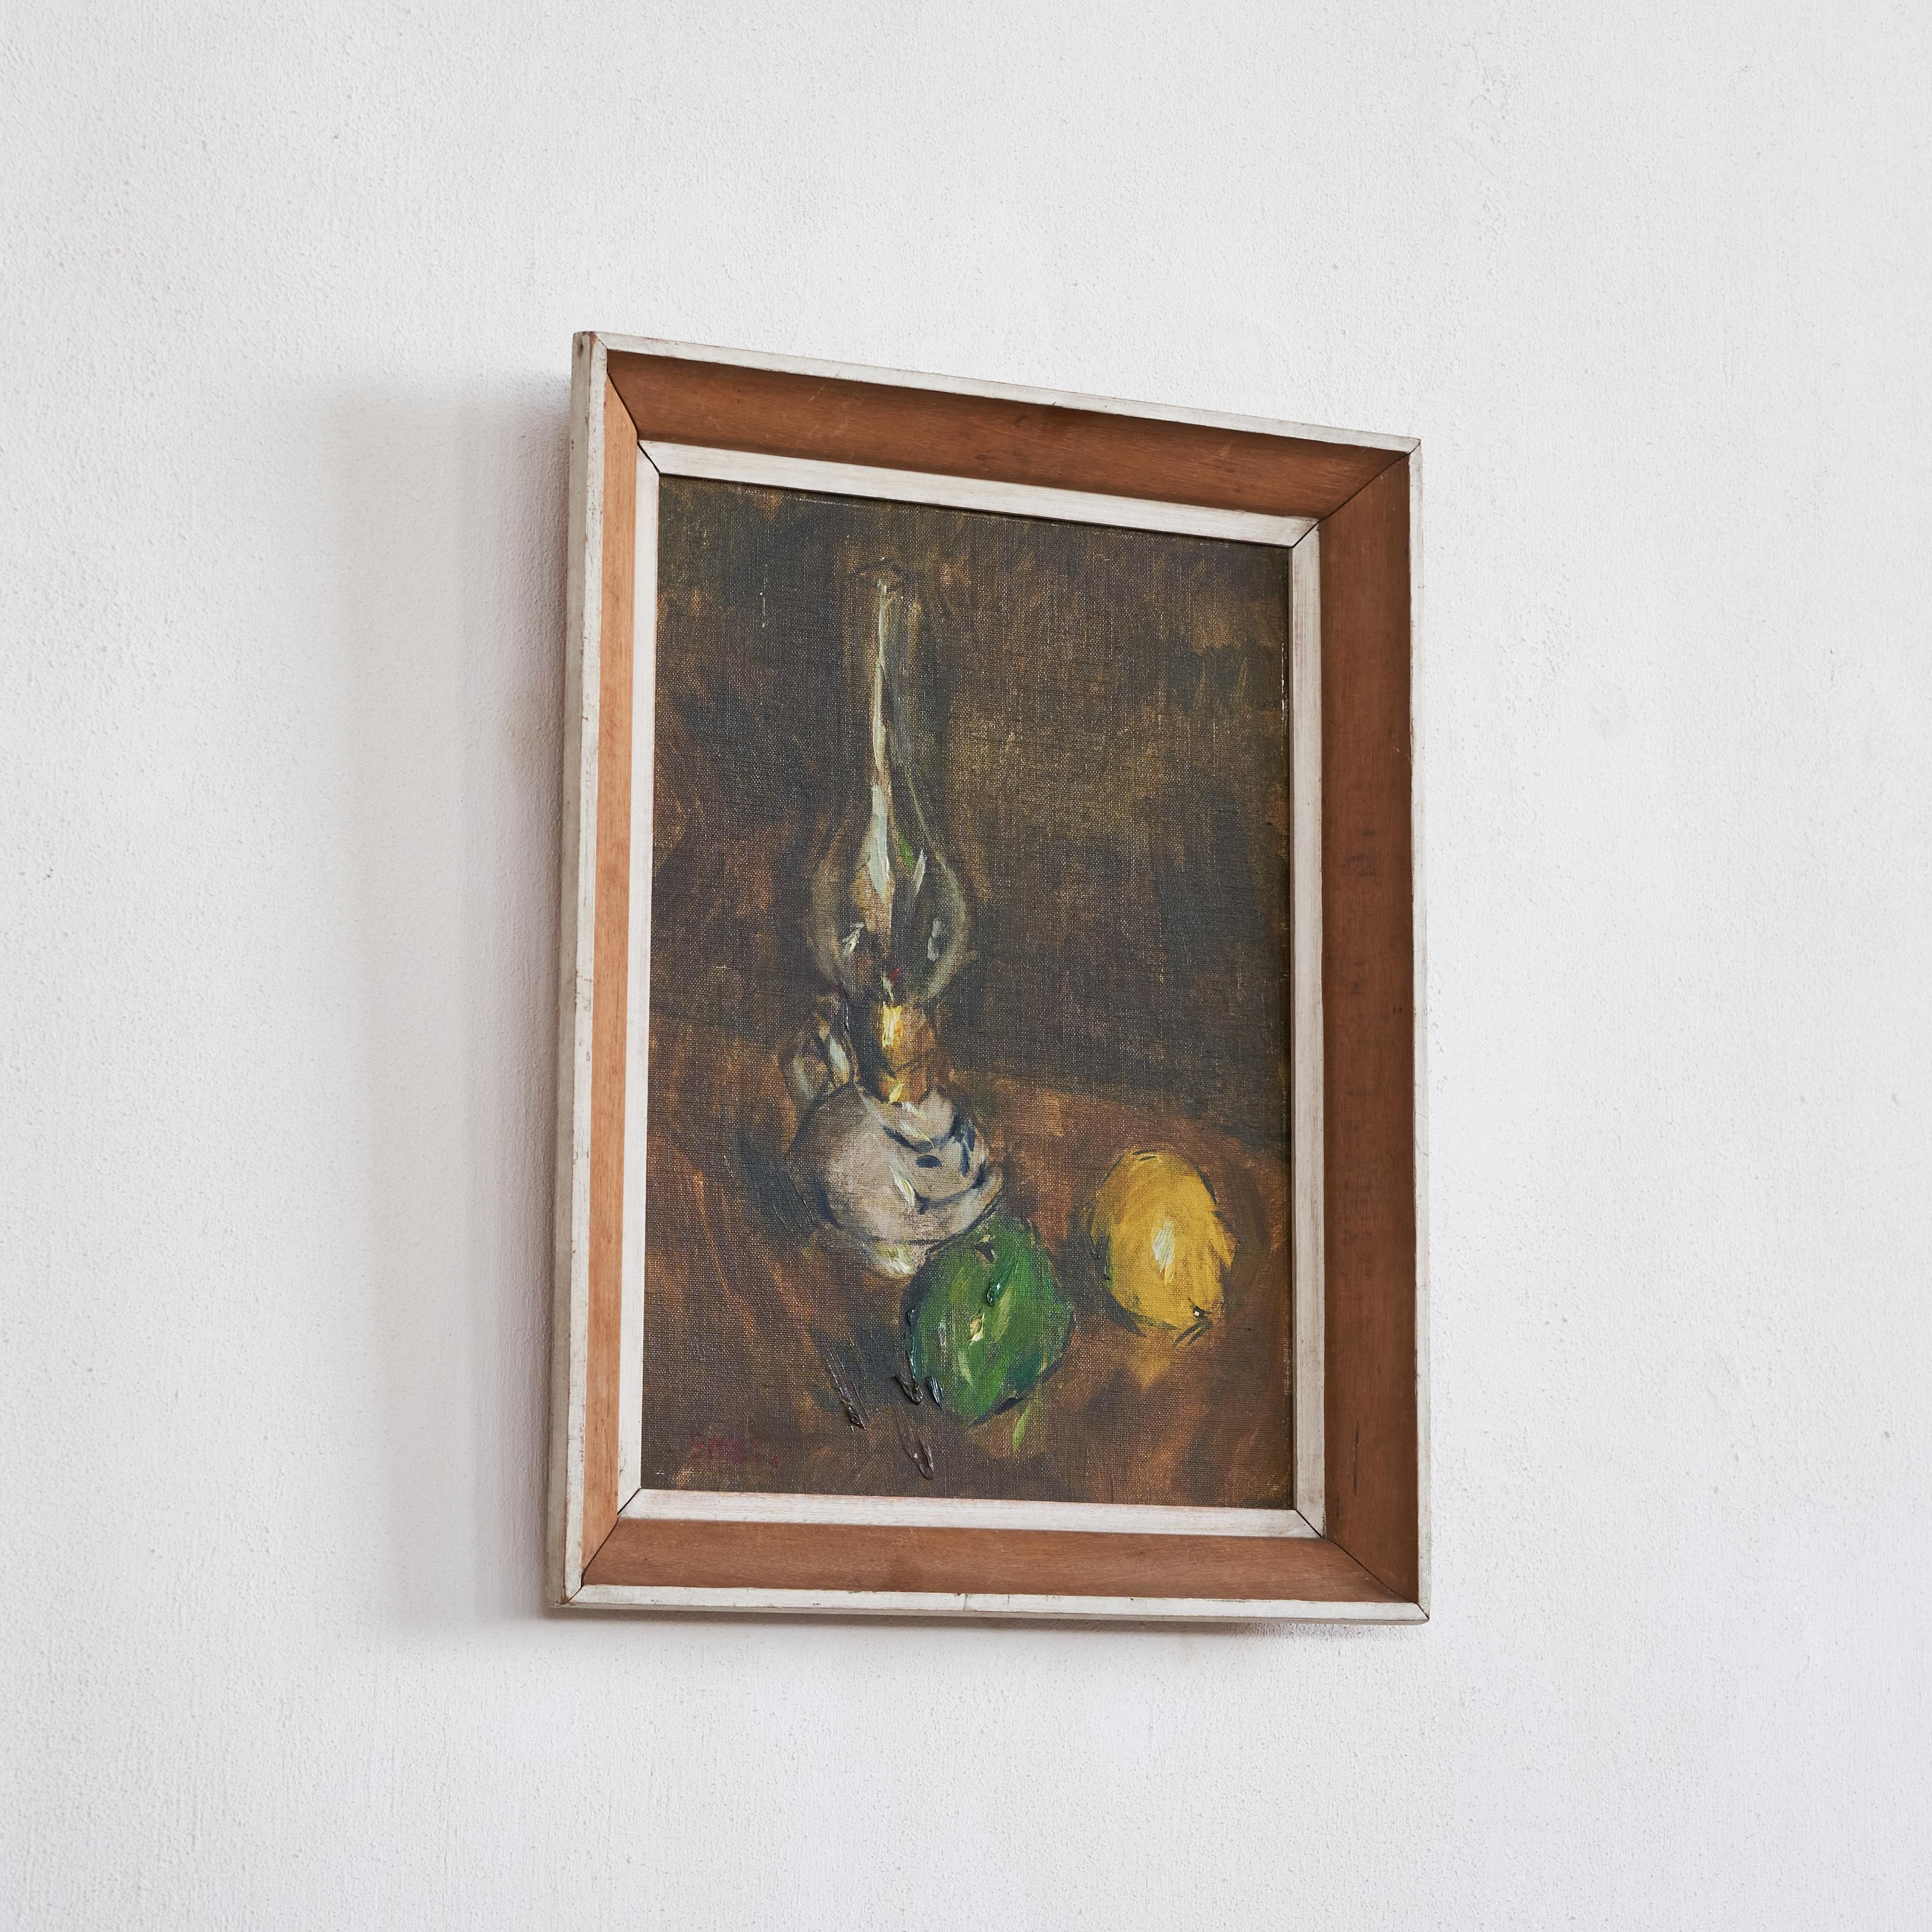 Gustave de Smet 'Stillleben mit Öllampe und Obst' Öl auf Karton, Belgien, 1930er Jahre.

Gustave Franciscus (Gustaaf) de Smet (1877-1943) war ein belgischer Maler, der als einer der Begründer des flämischen Expressionismus gilt. Sein Werk zeichnet